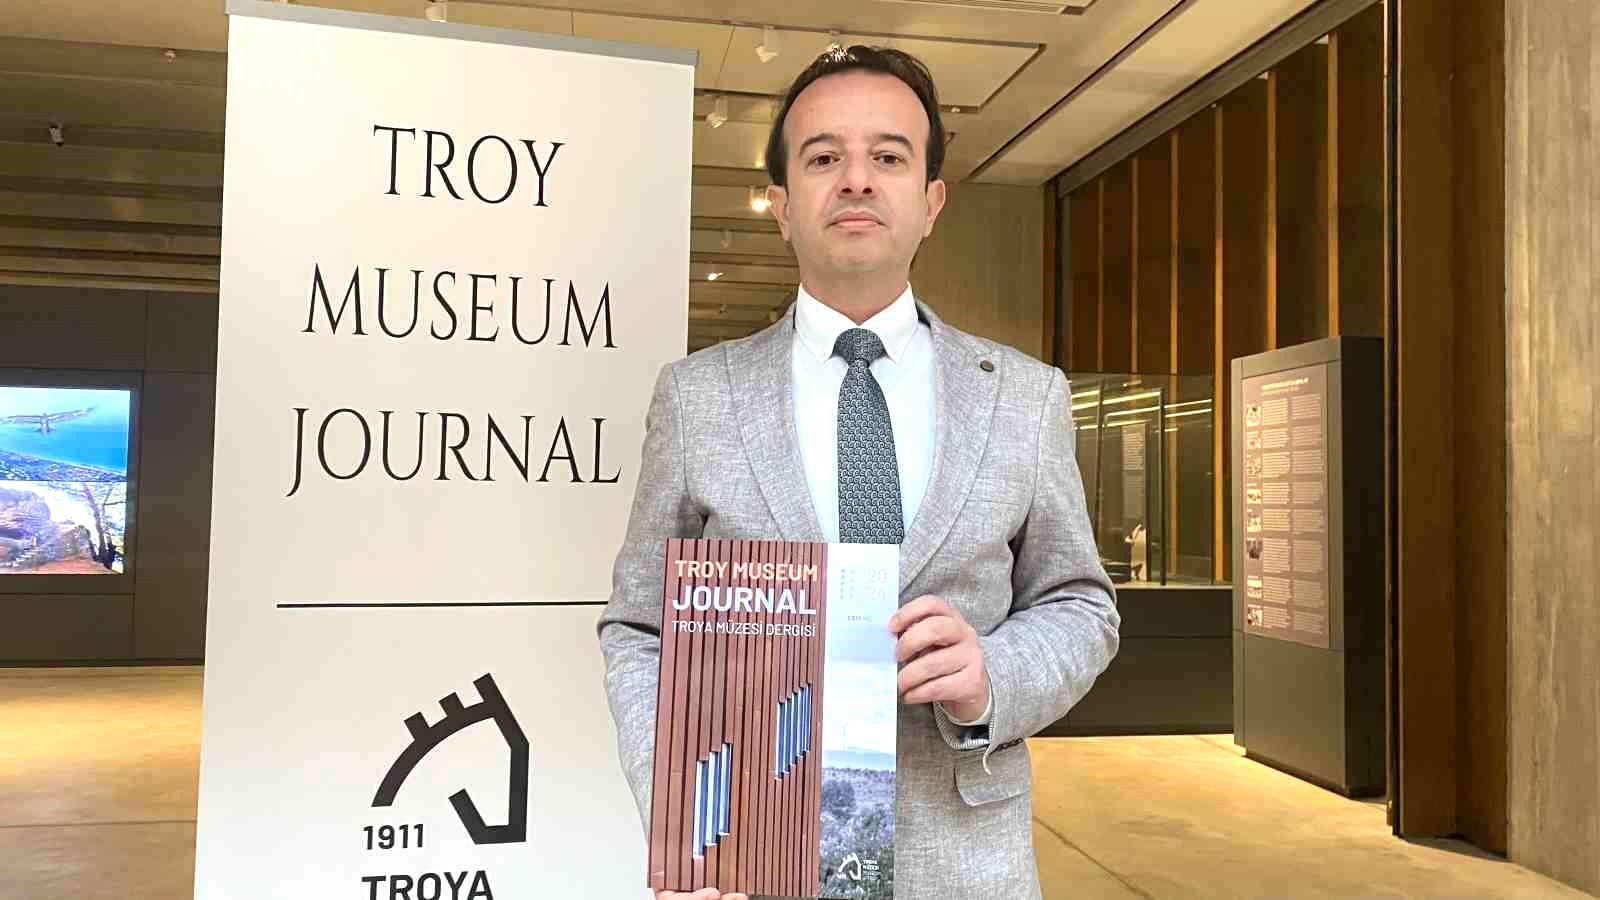 Türkiye’nin ilk müze dergisi Troy Museum Journal yayın hayatına başlıyor